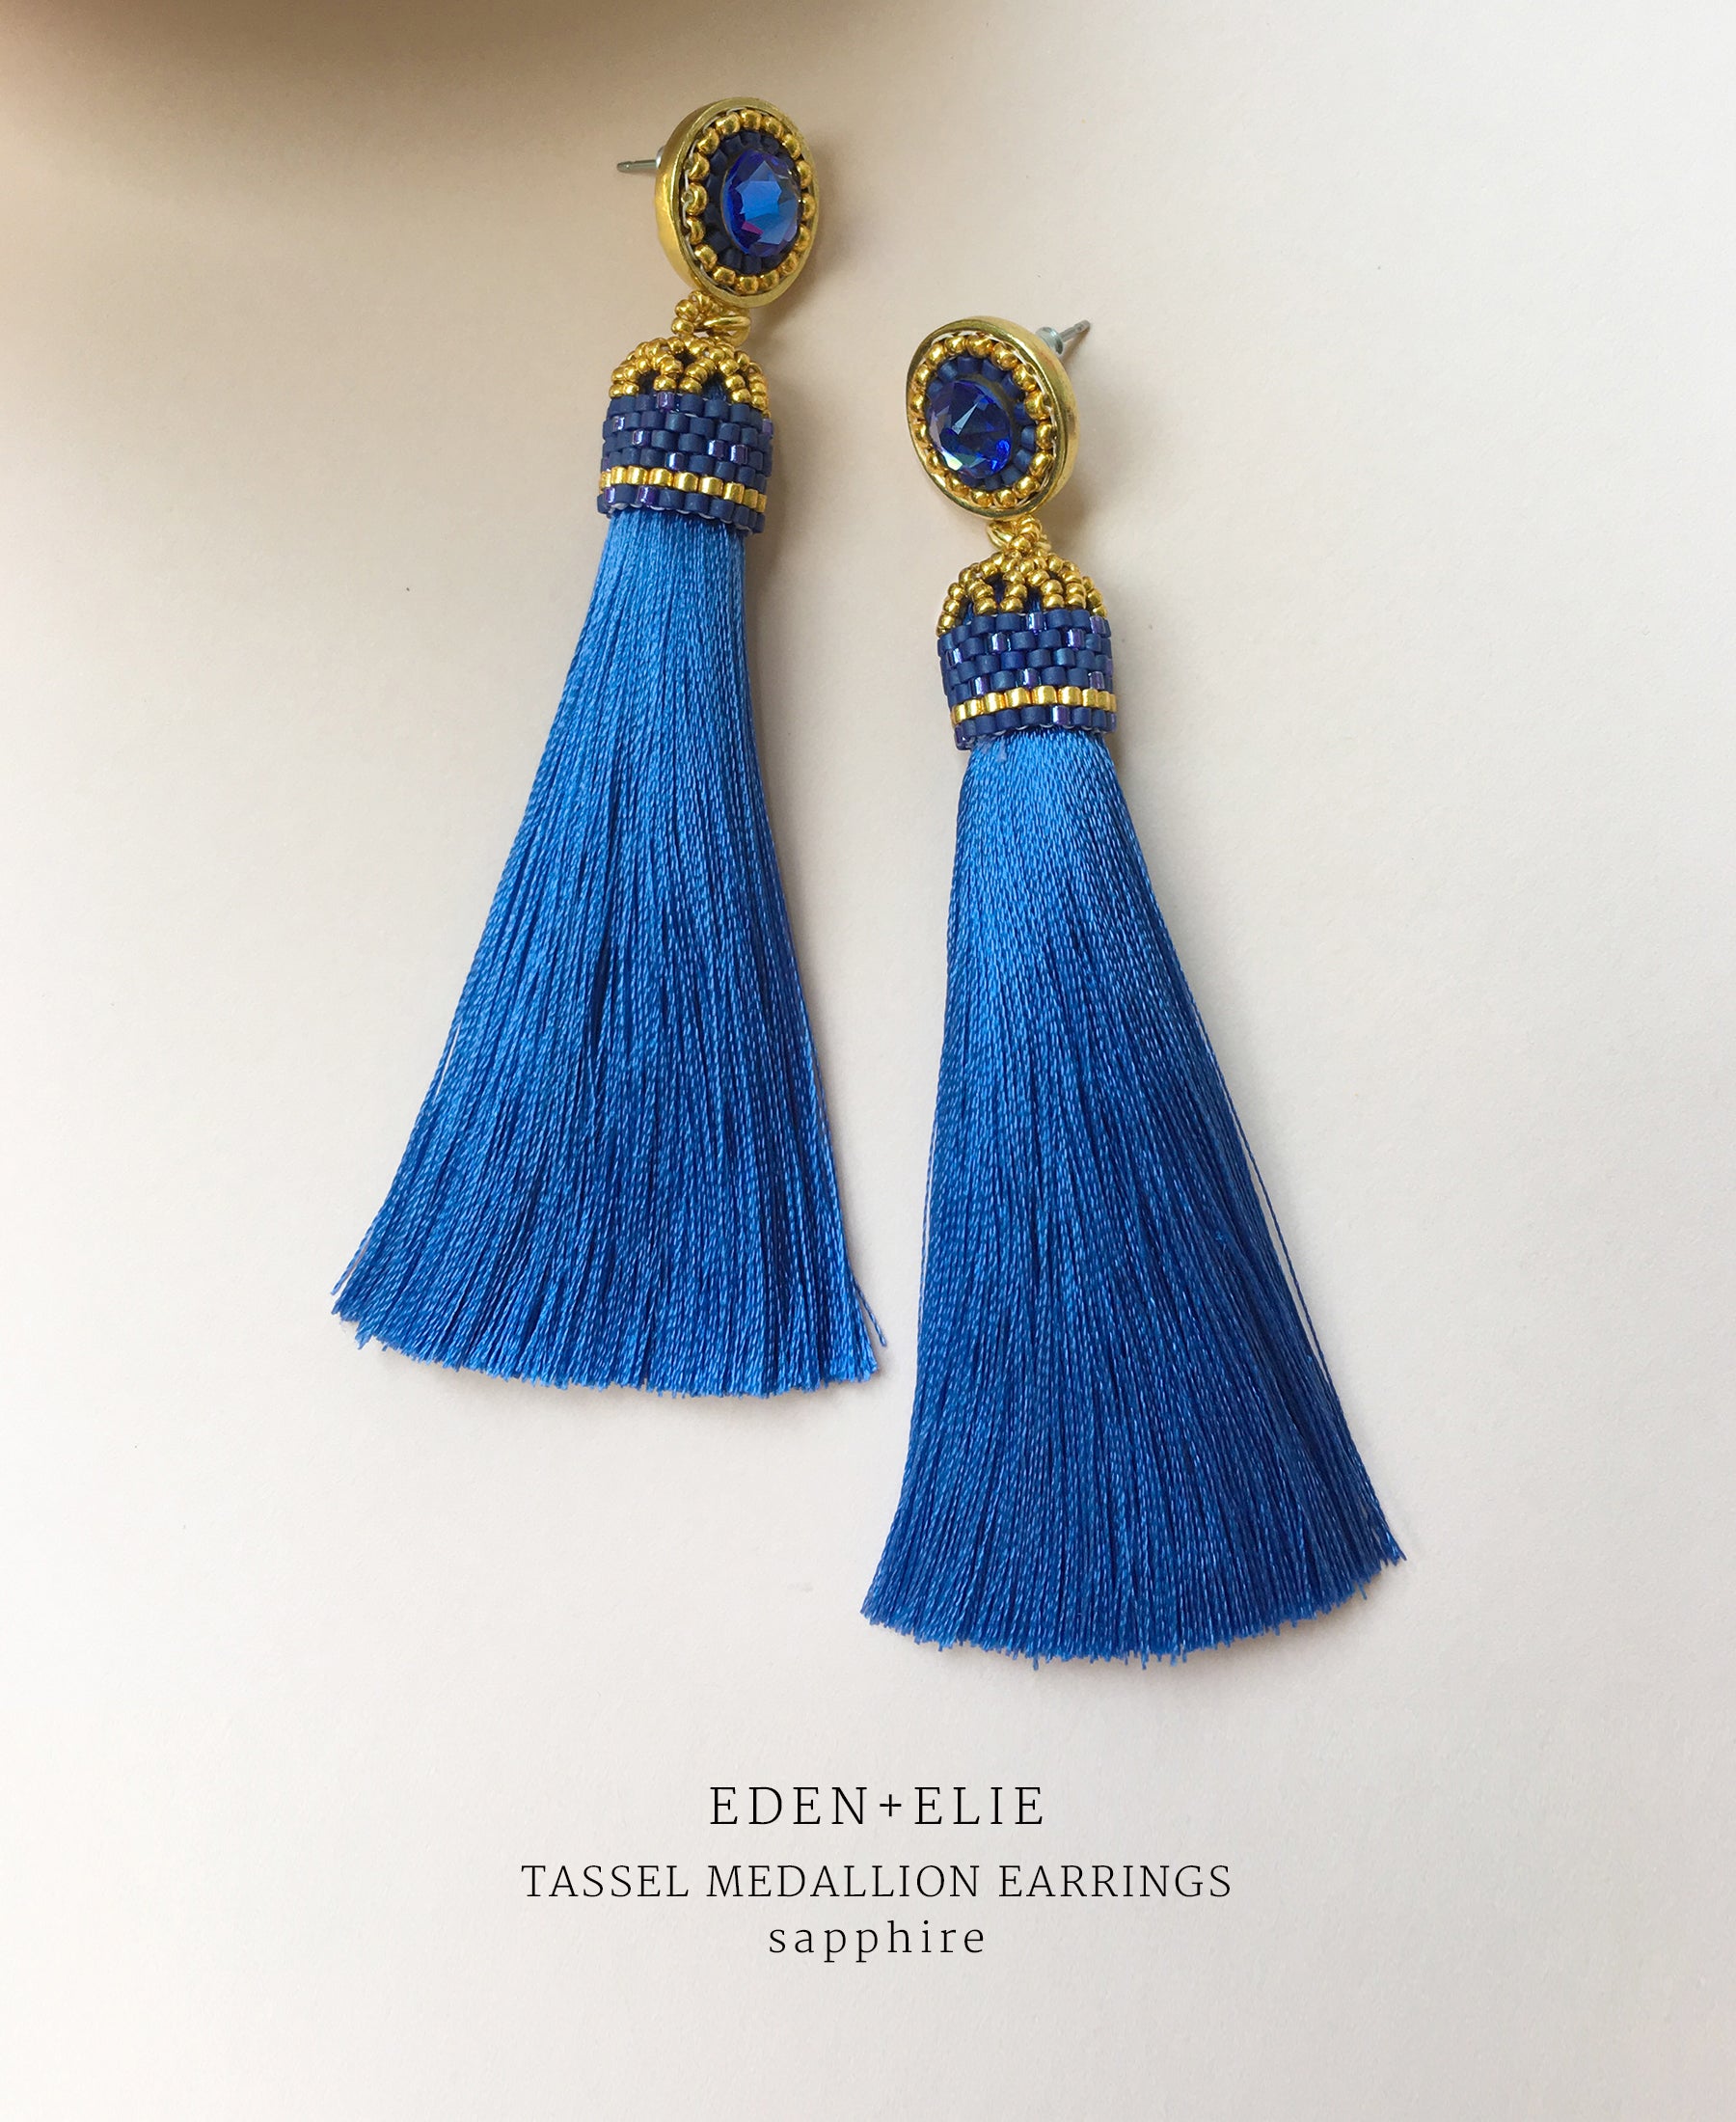 EDEN + ELIE silk tassel statement earrings - sapphire blue